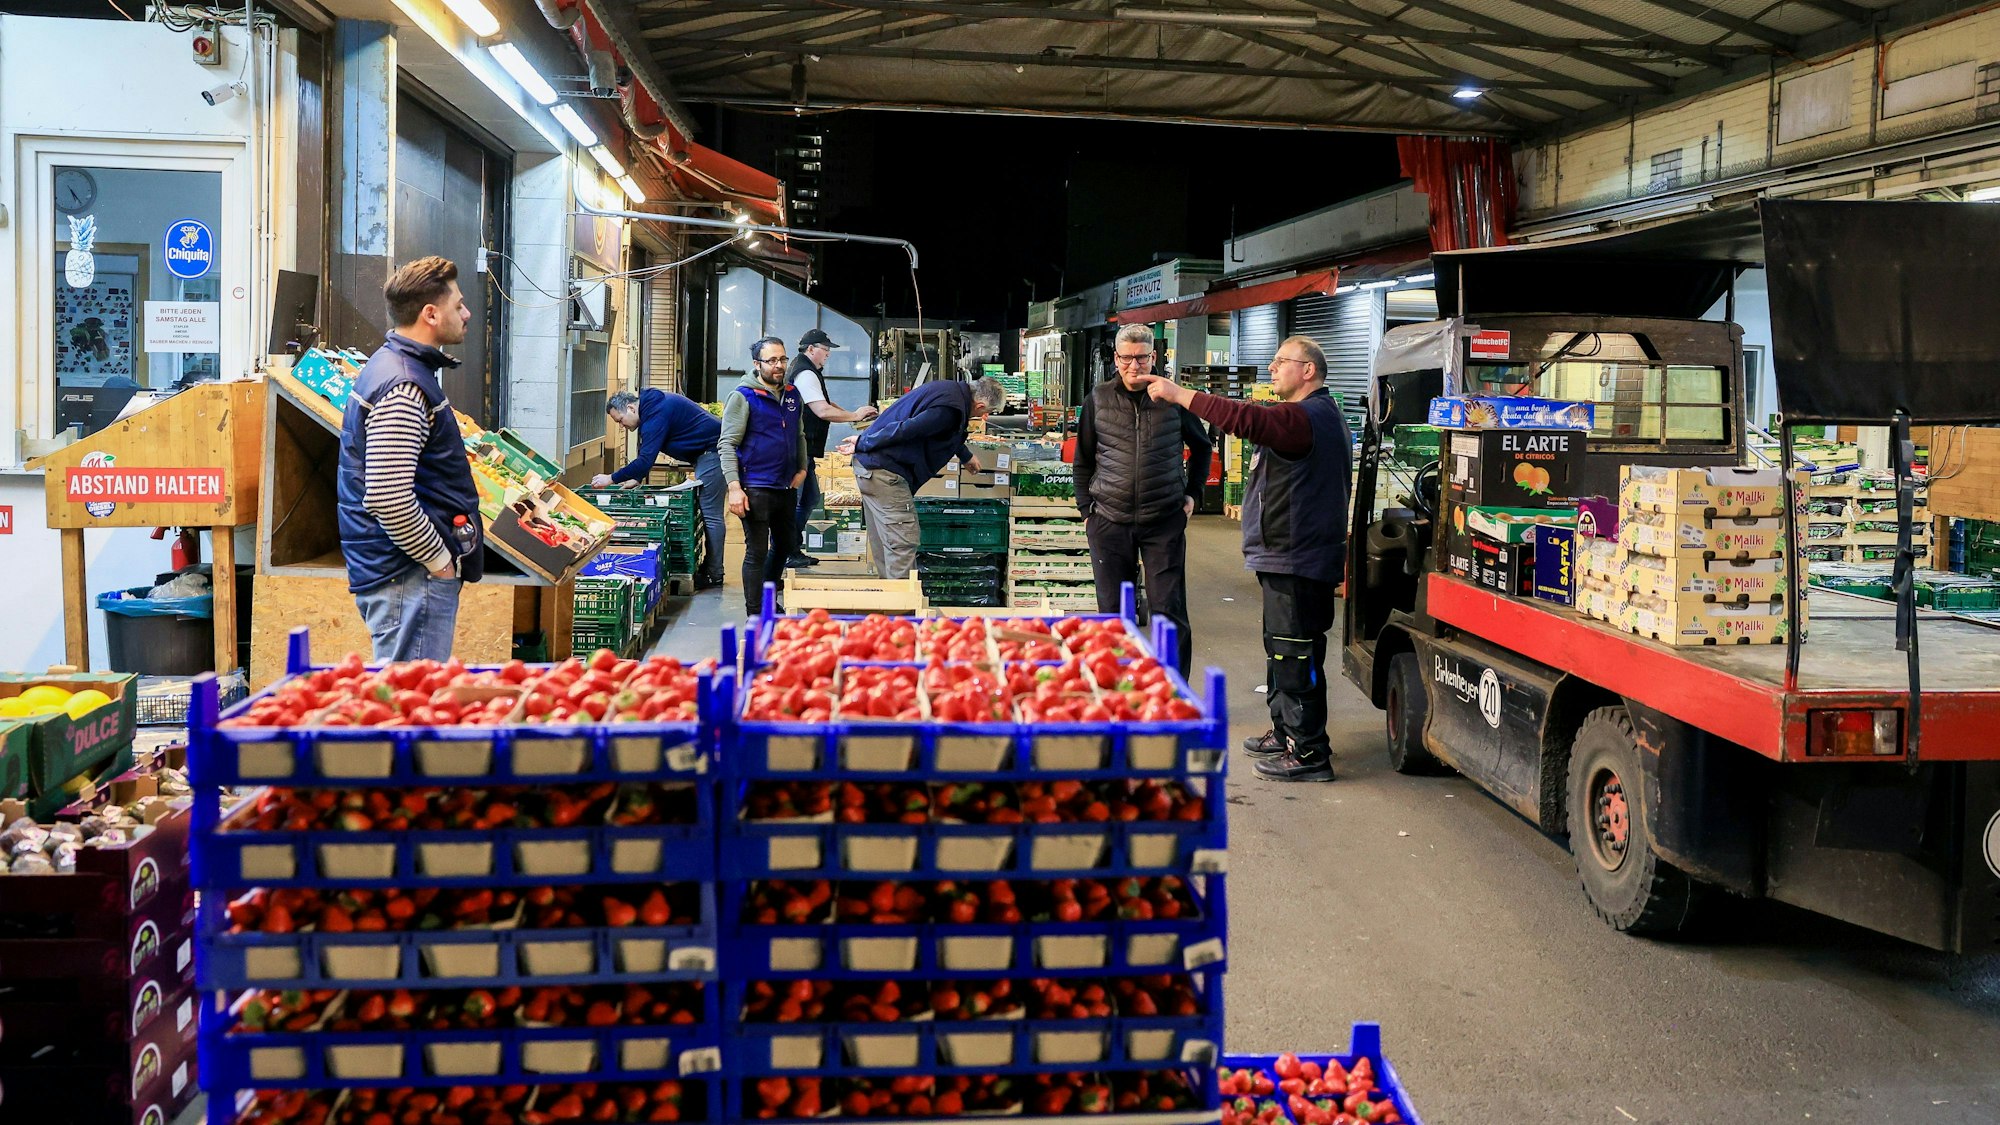 Palettenweise Erdbeeren: Am Großmarkt stehen Früchte zum Verkauf bereit.
